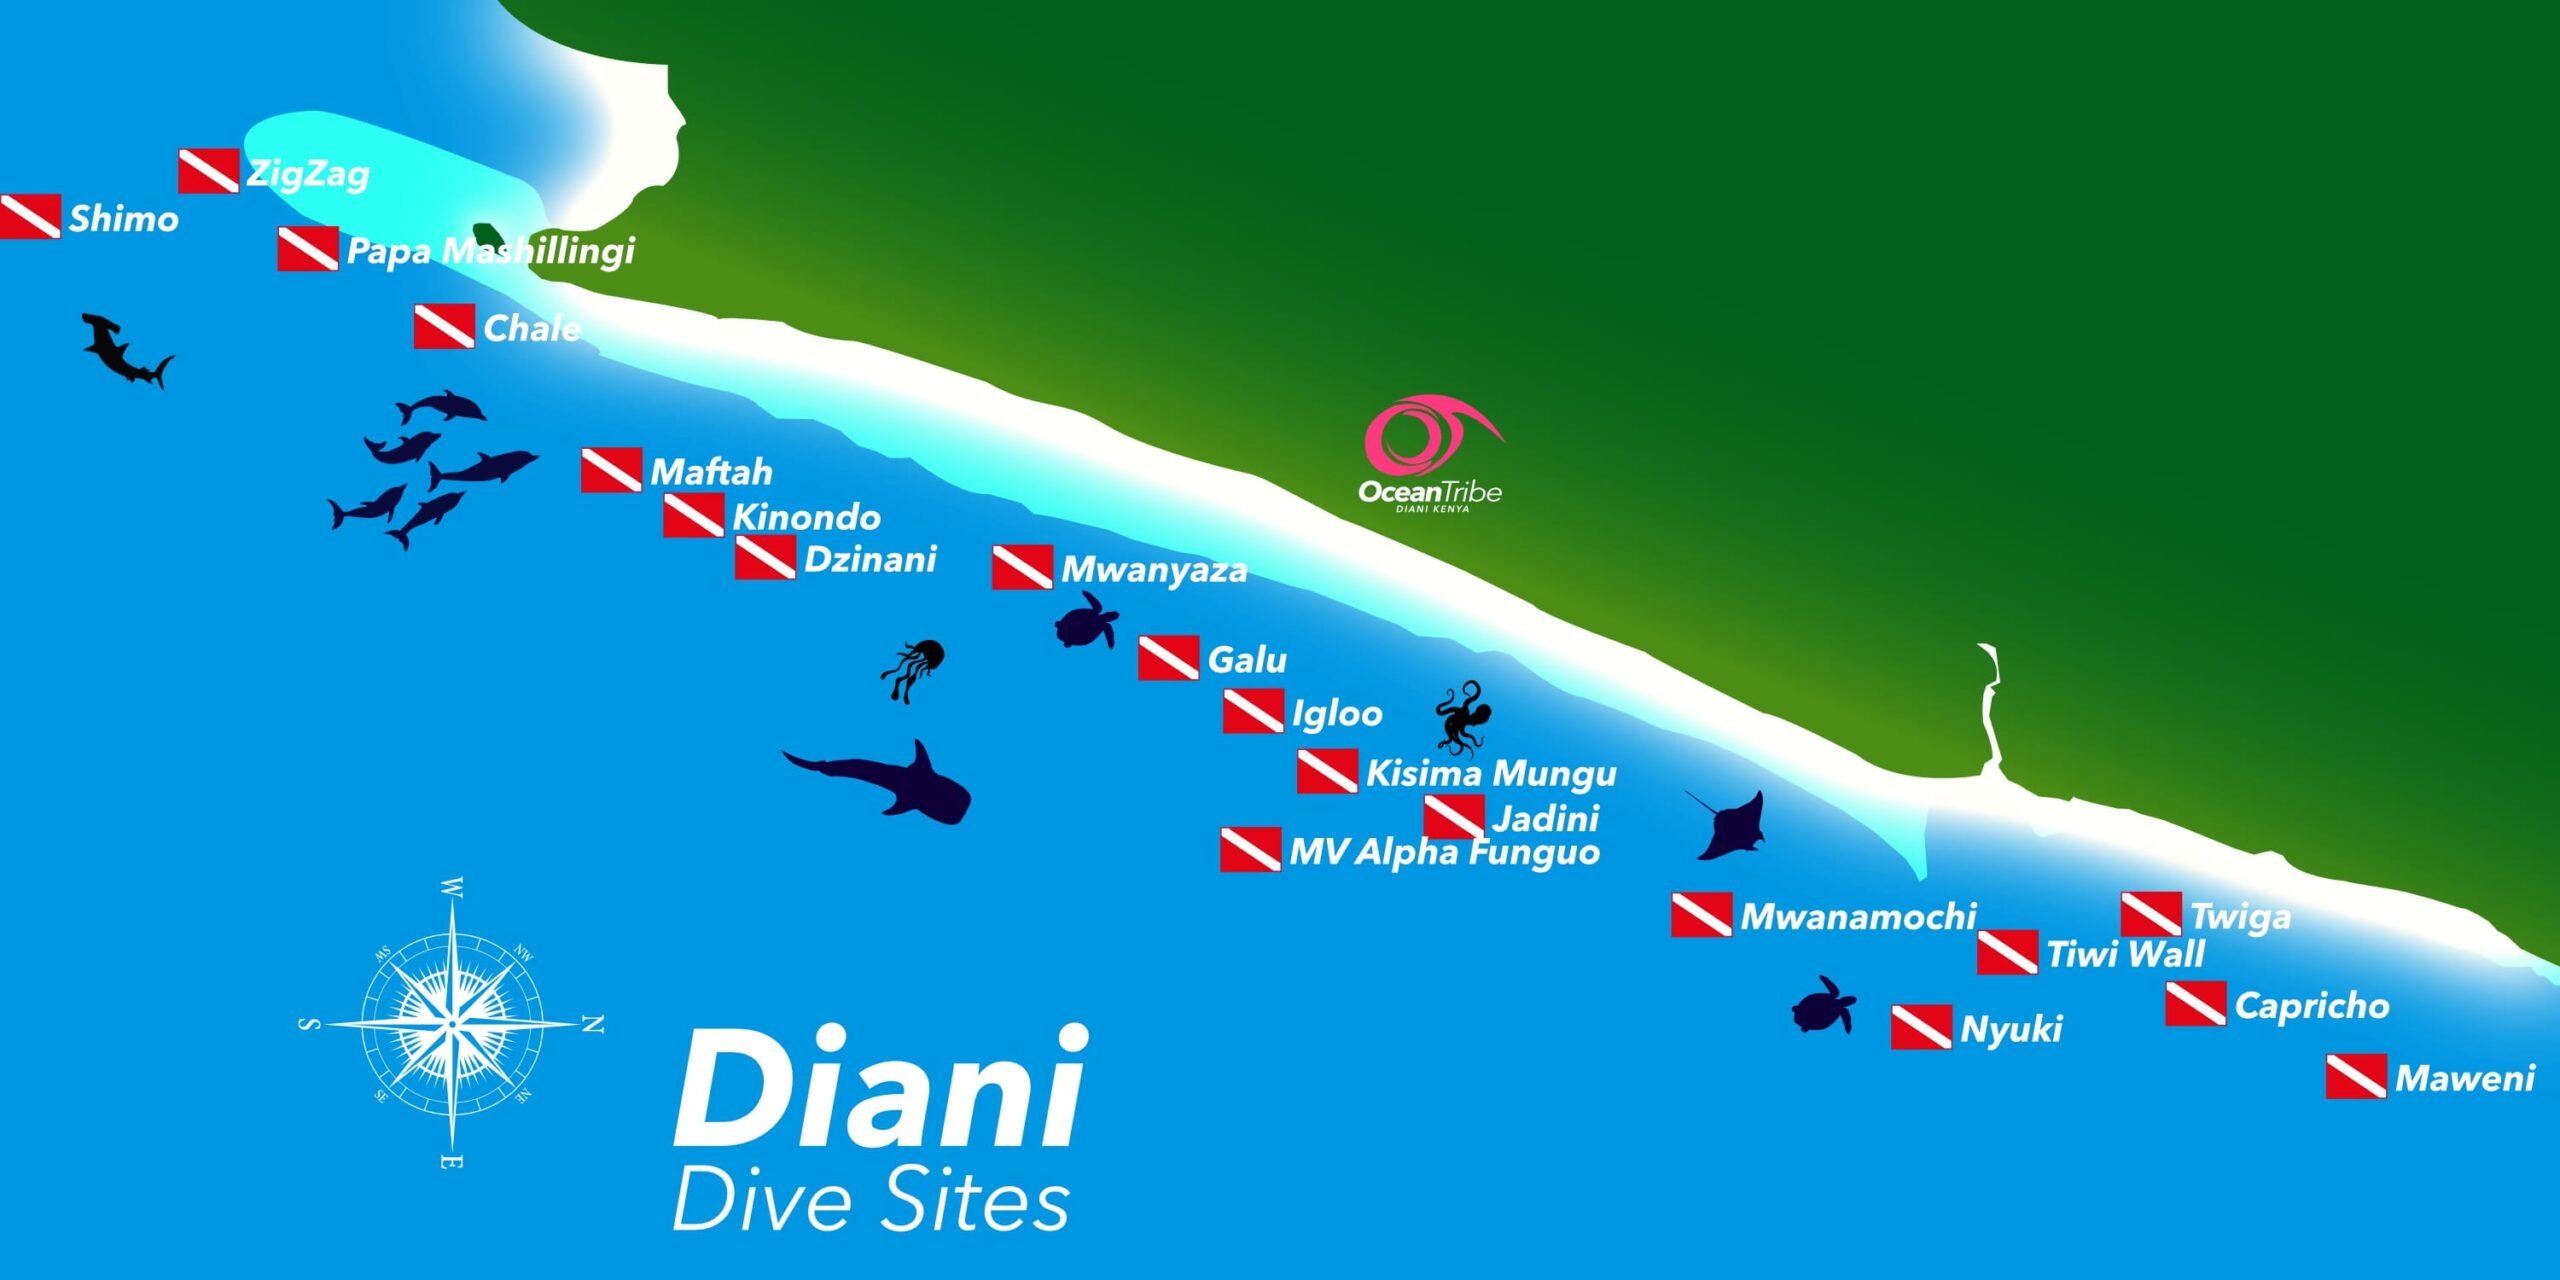 Diani dive trip dive sites